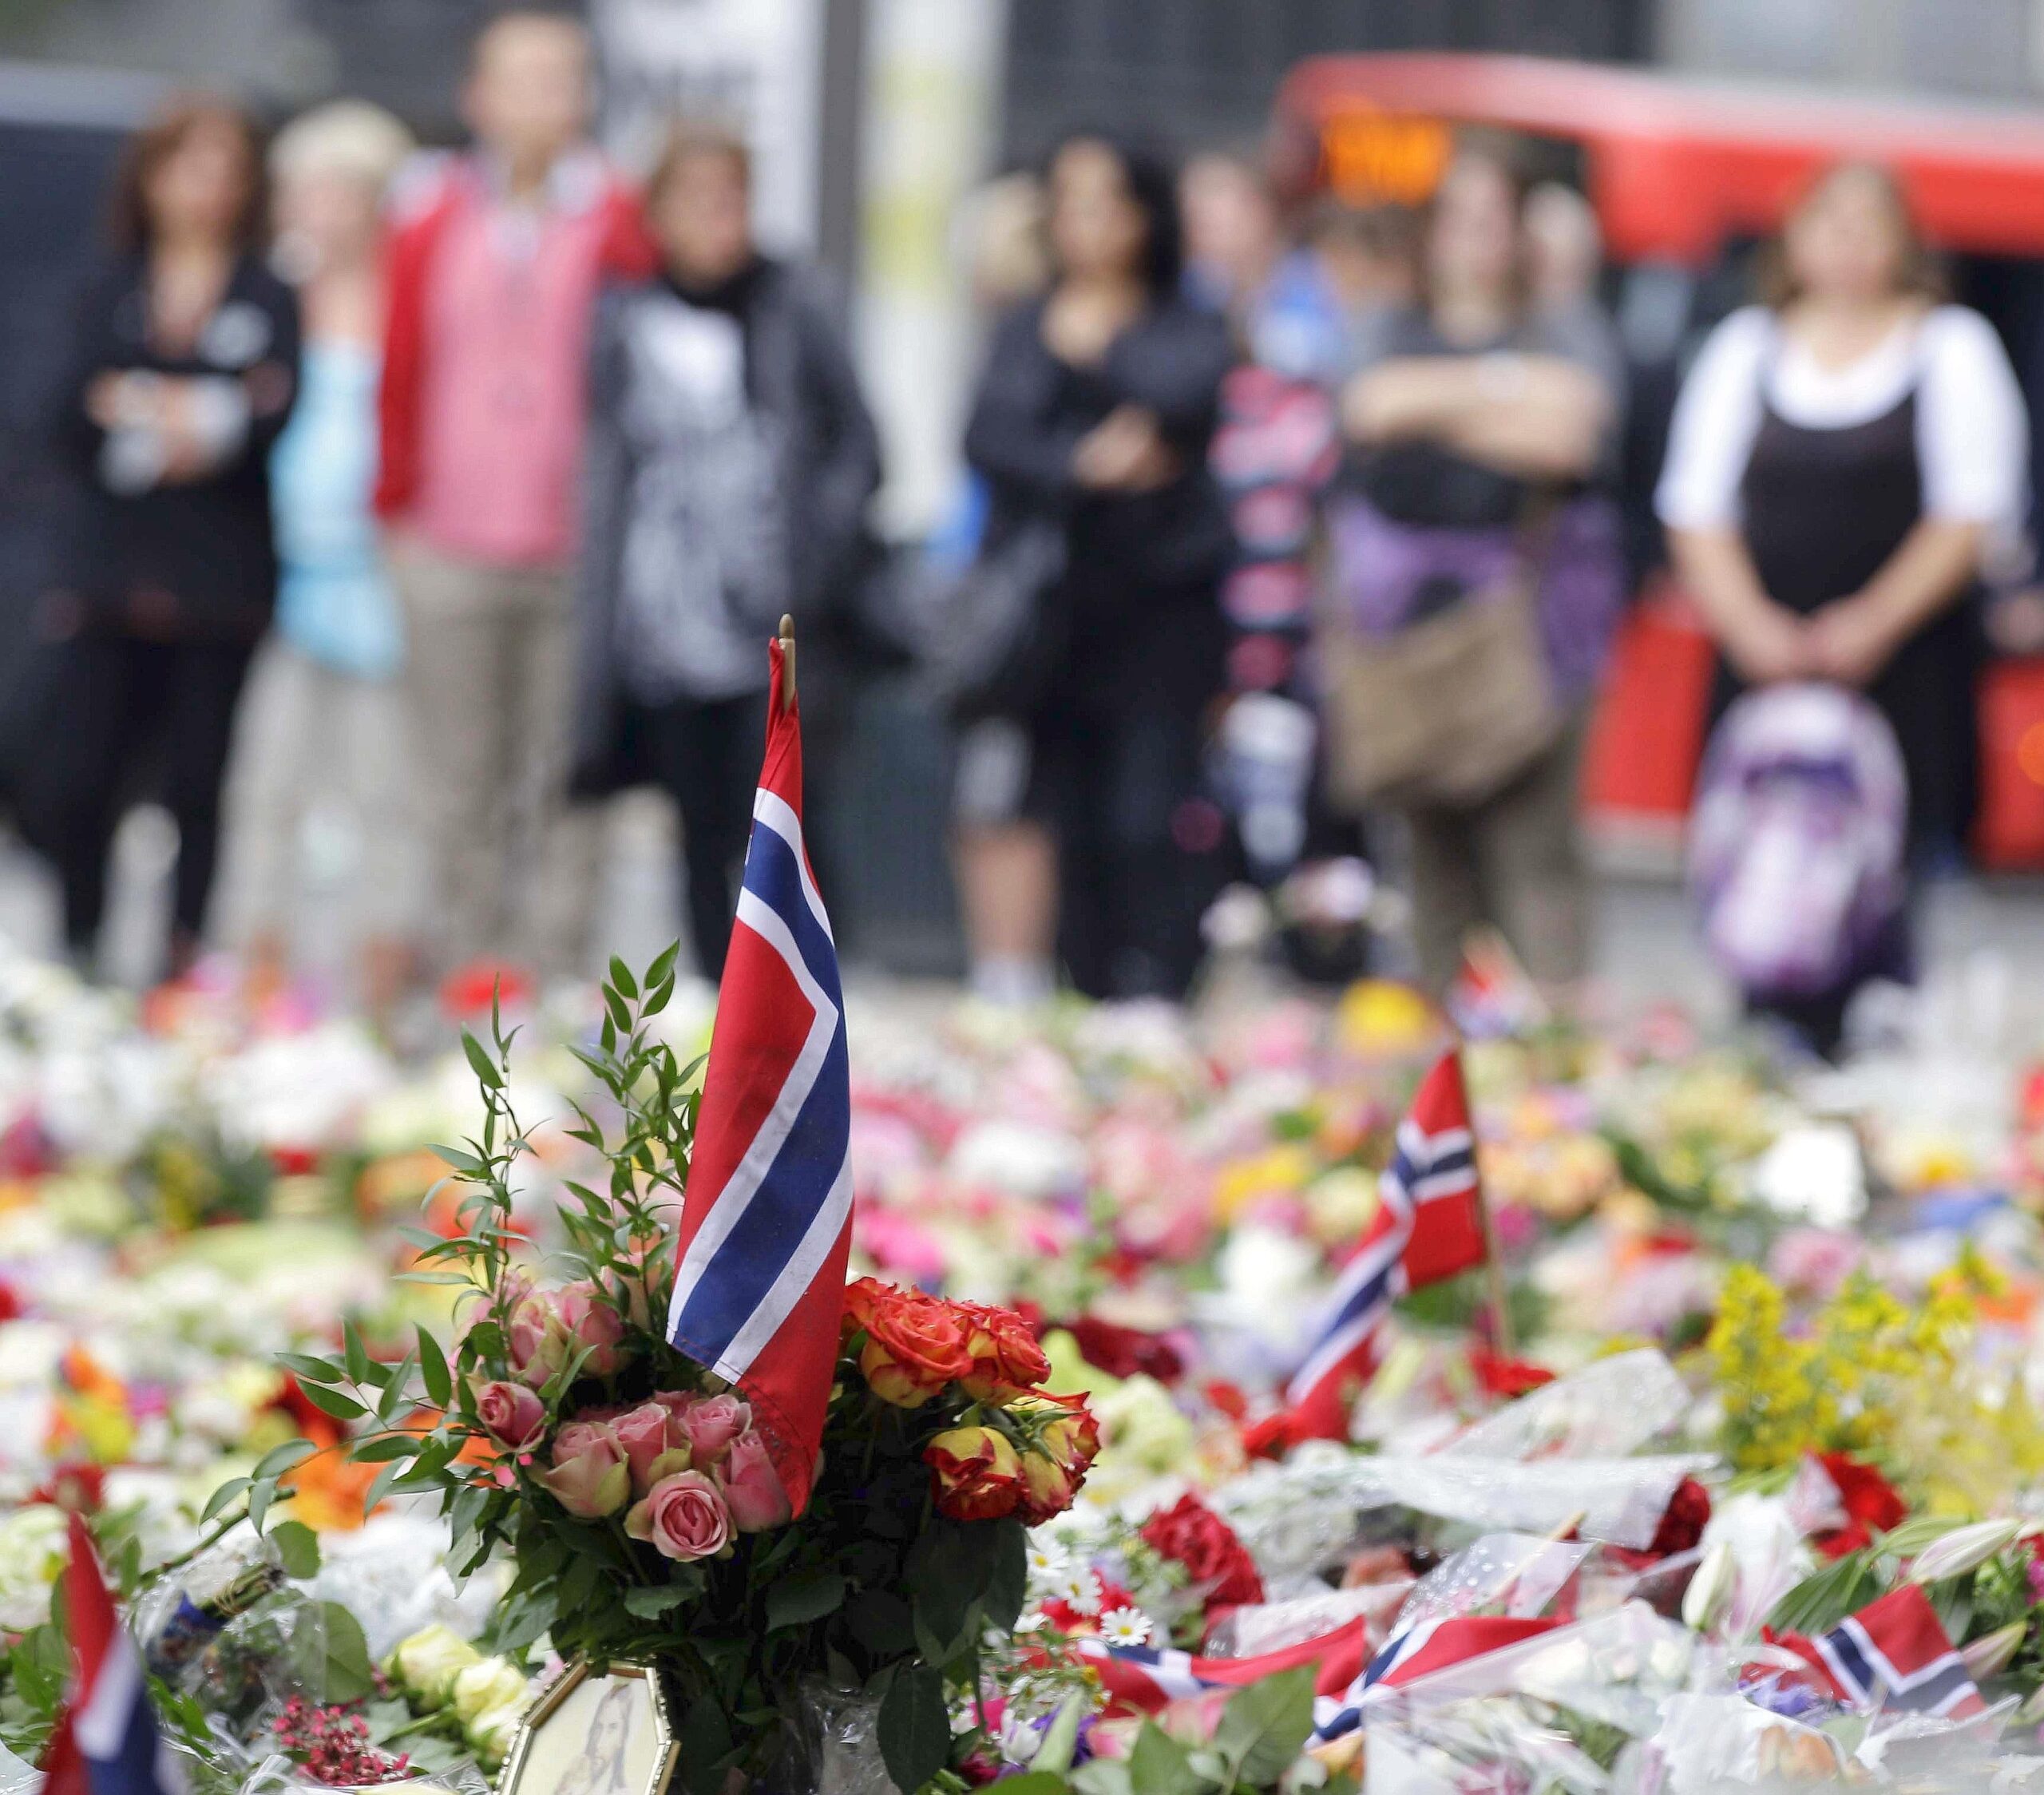 Schweigend gedenken die Menschen in Oslo den Toten. Ganz Norwegen befindet sich im Schockzustand.